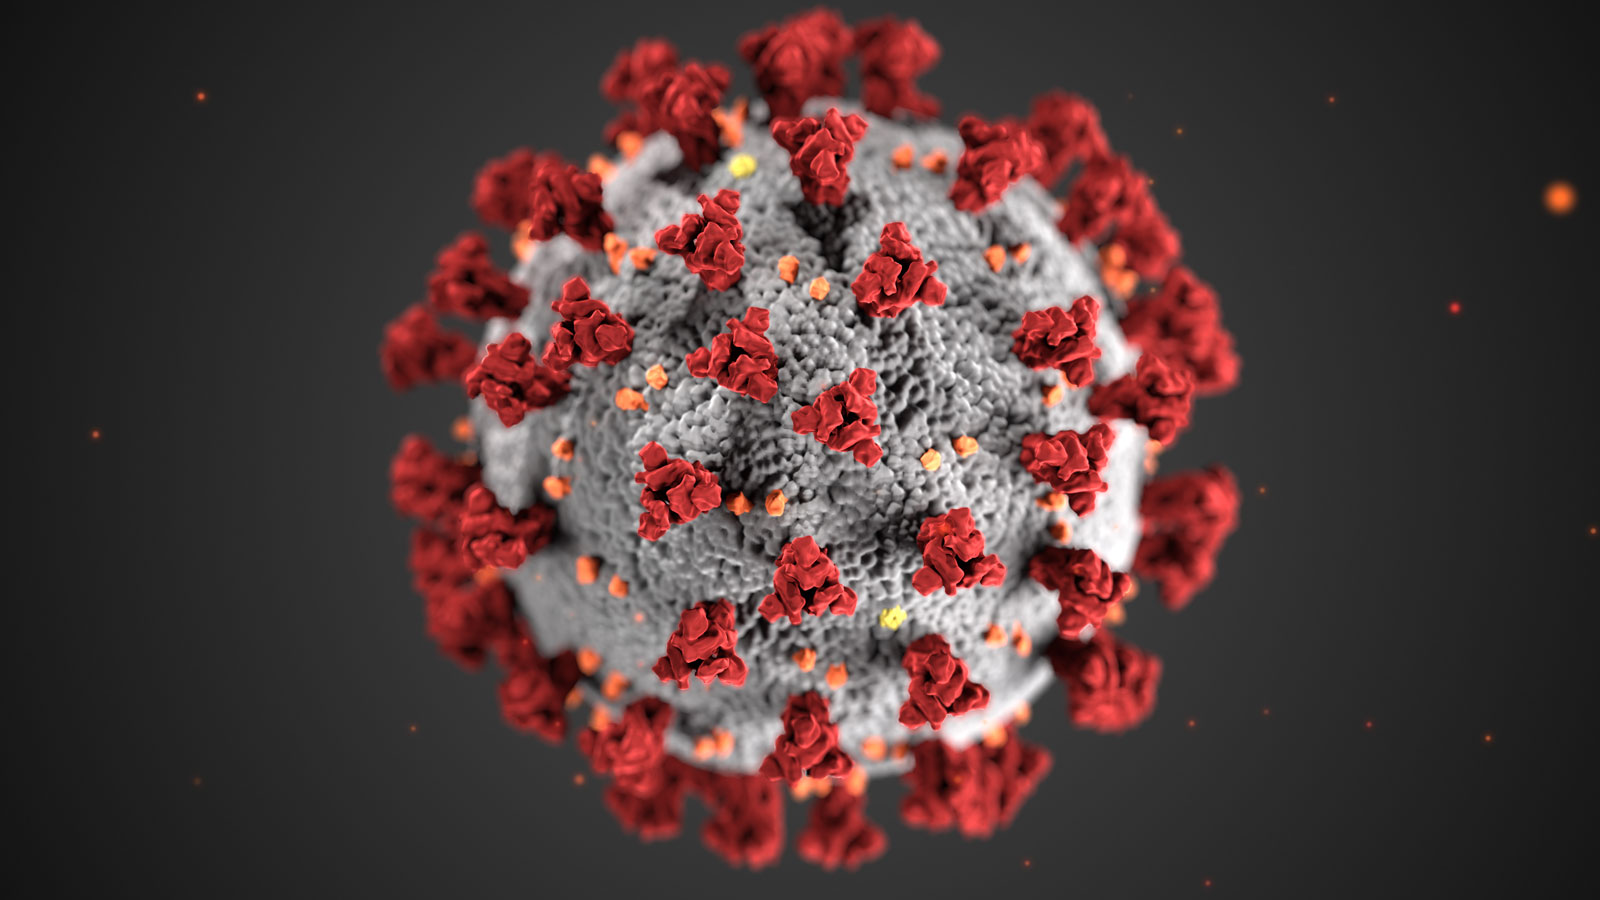  فيروس كورونا: لقاح جديد يعطي مناعة لمدة 8 أشهر